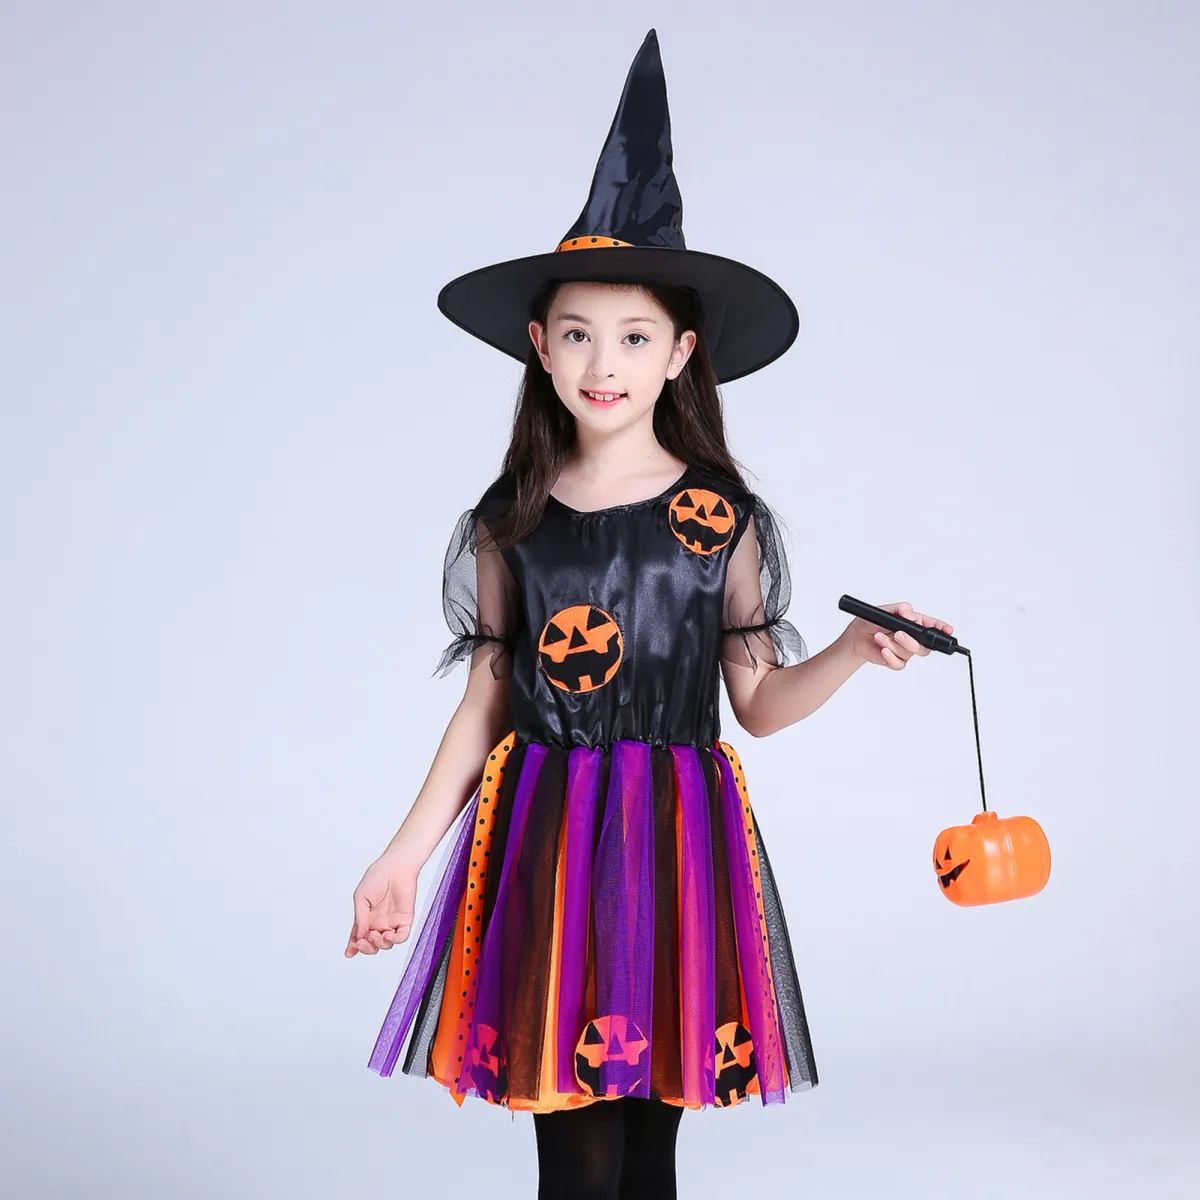 Hãy cùng thưởng thức những chiếc váy Halloween hoạt hình vô cùng đáng yêu và tinh nghịch này! Bạn sẽ không thể rời mắt khỏi những họa tiết đậm chất Halloween và màu sắc tươi vui trên từng tấm vải. Chúng sẽ gợi lên cho bạn cảm giác ngập tràn bừng sáng trong ngày lễ đặc biệt này.